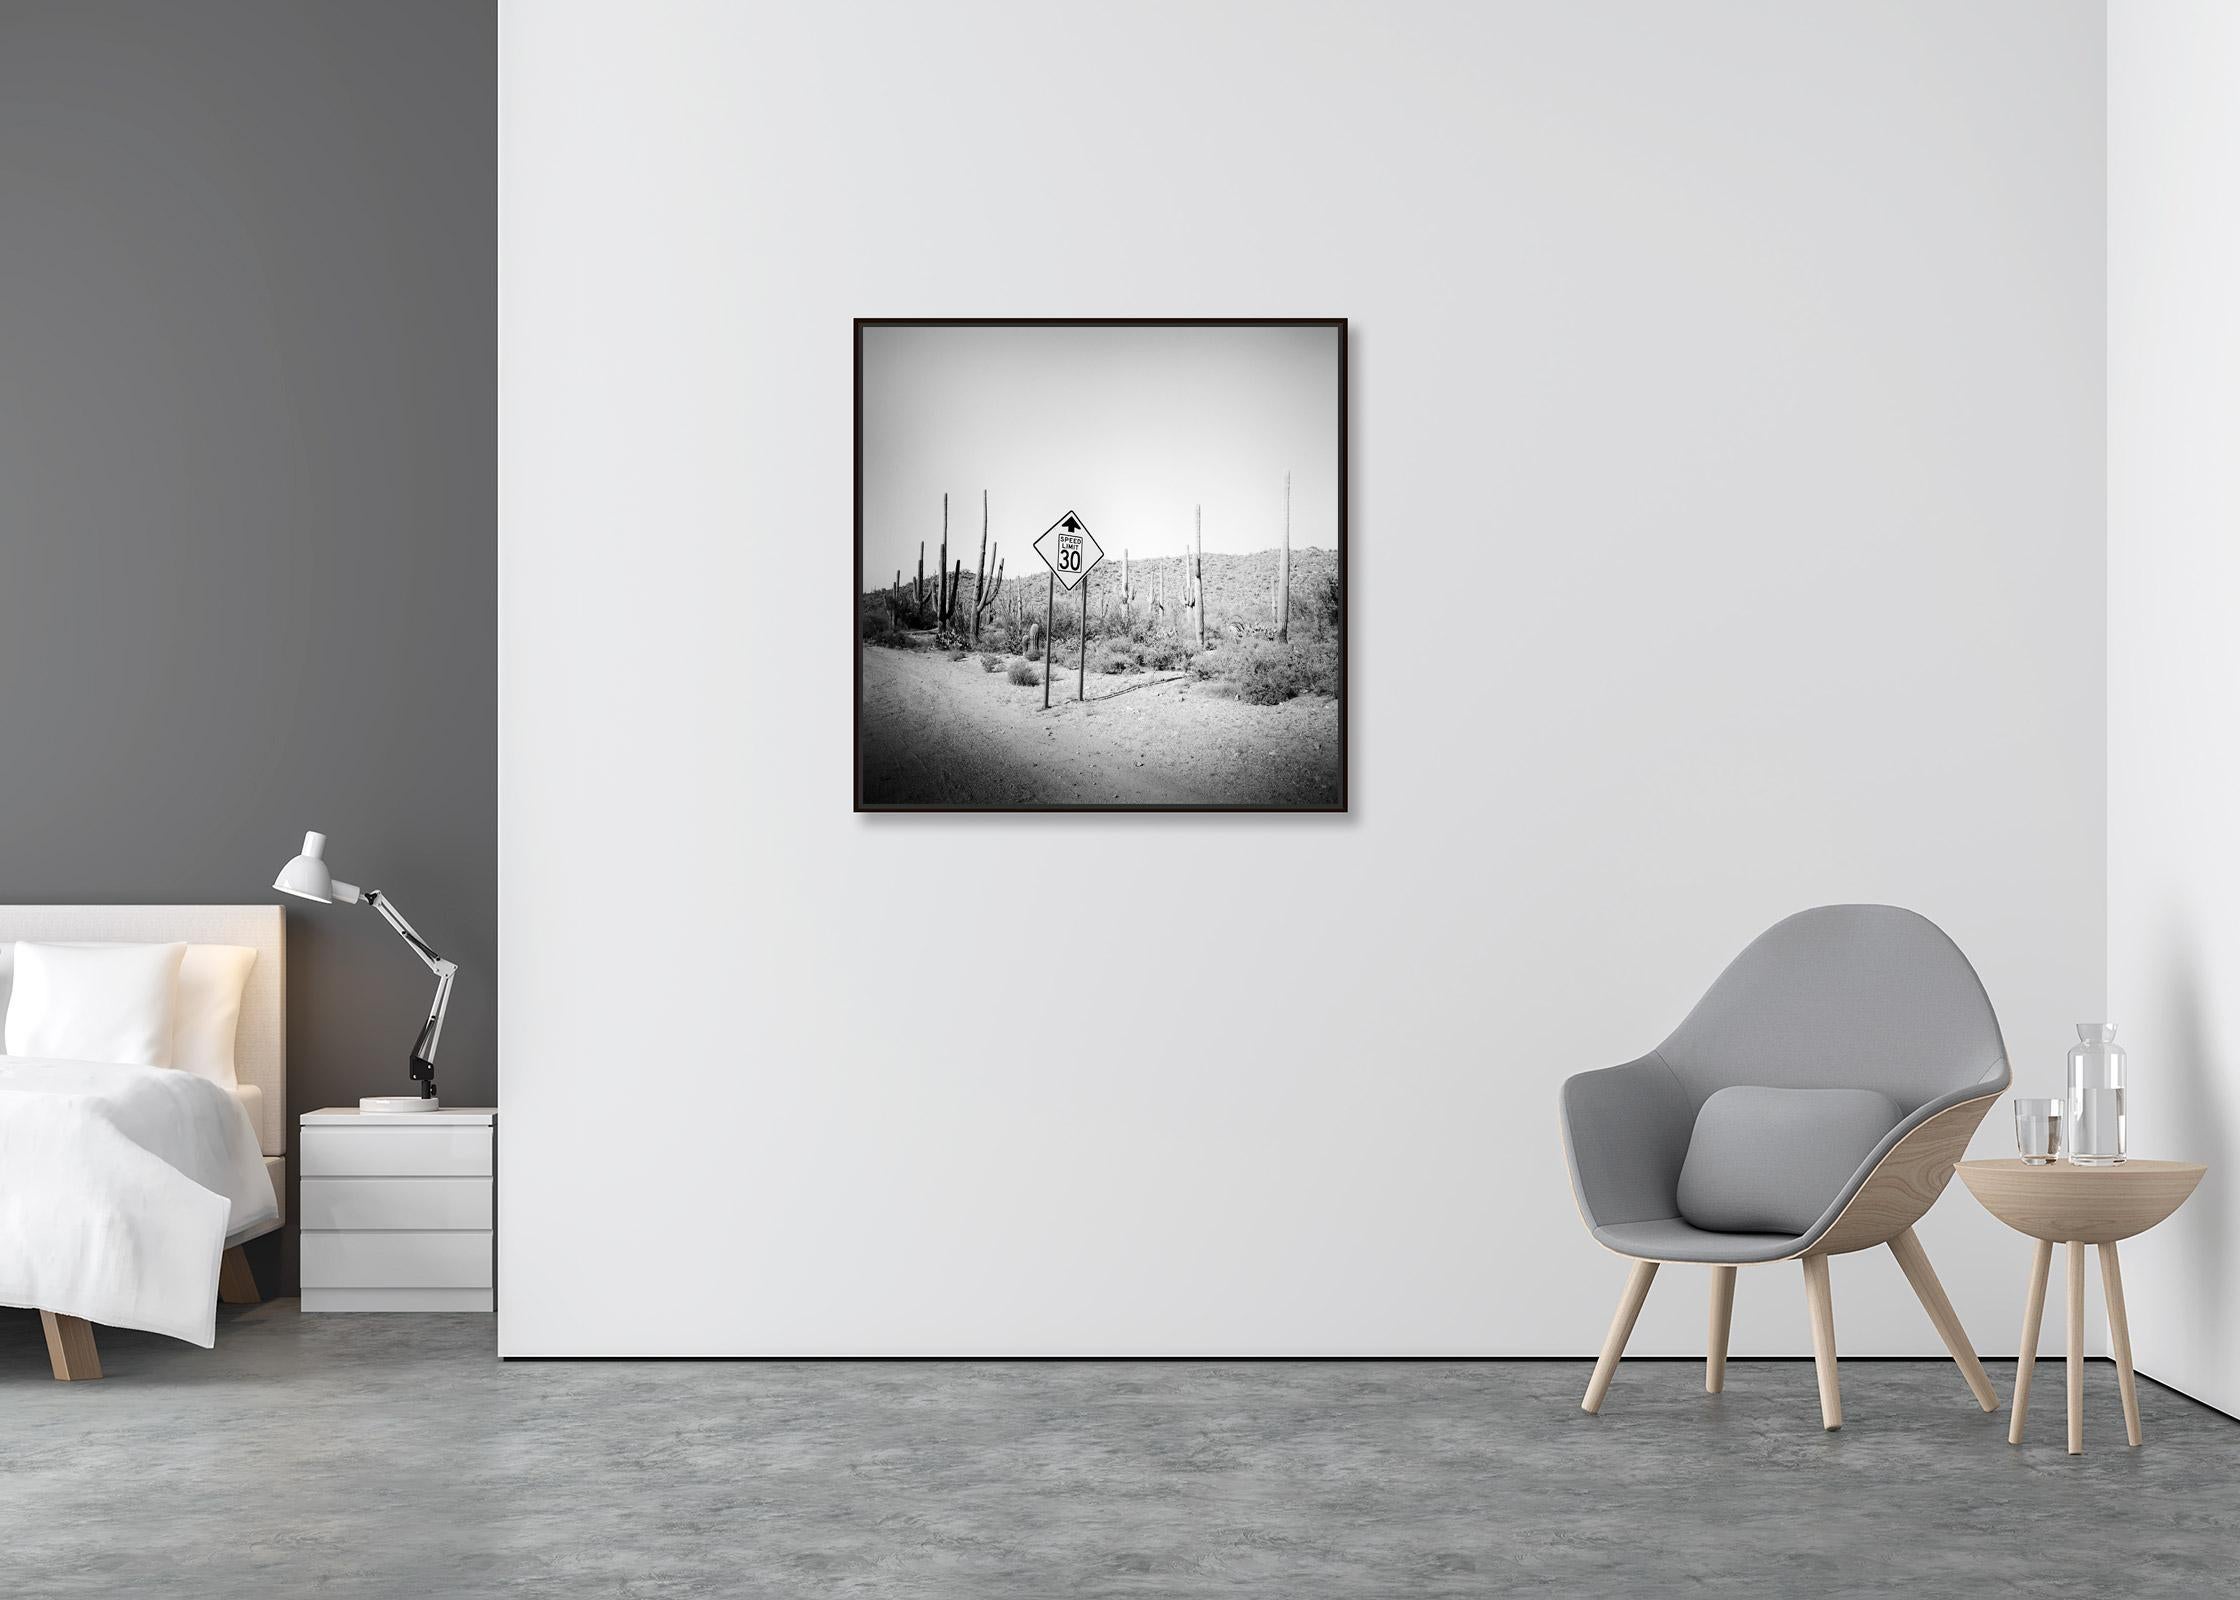 Limite de vitesse, désert, cactus, Arizona, photographie de paysage artistique en noir et blanc - Contemporain Photograph par Gerald Berghammer